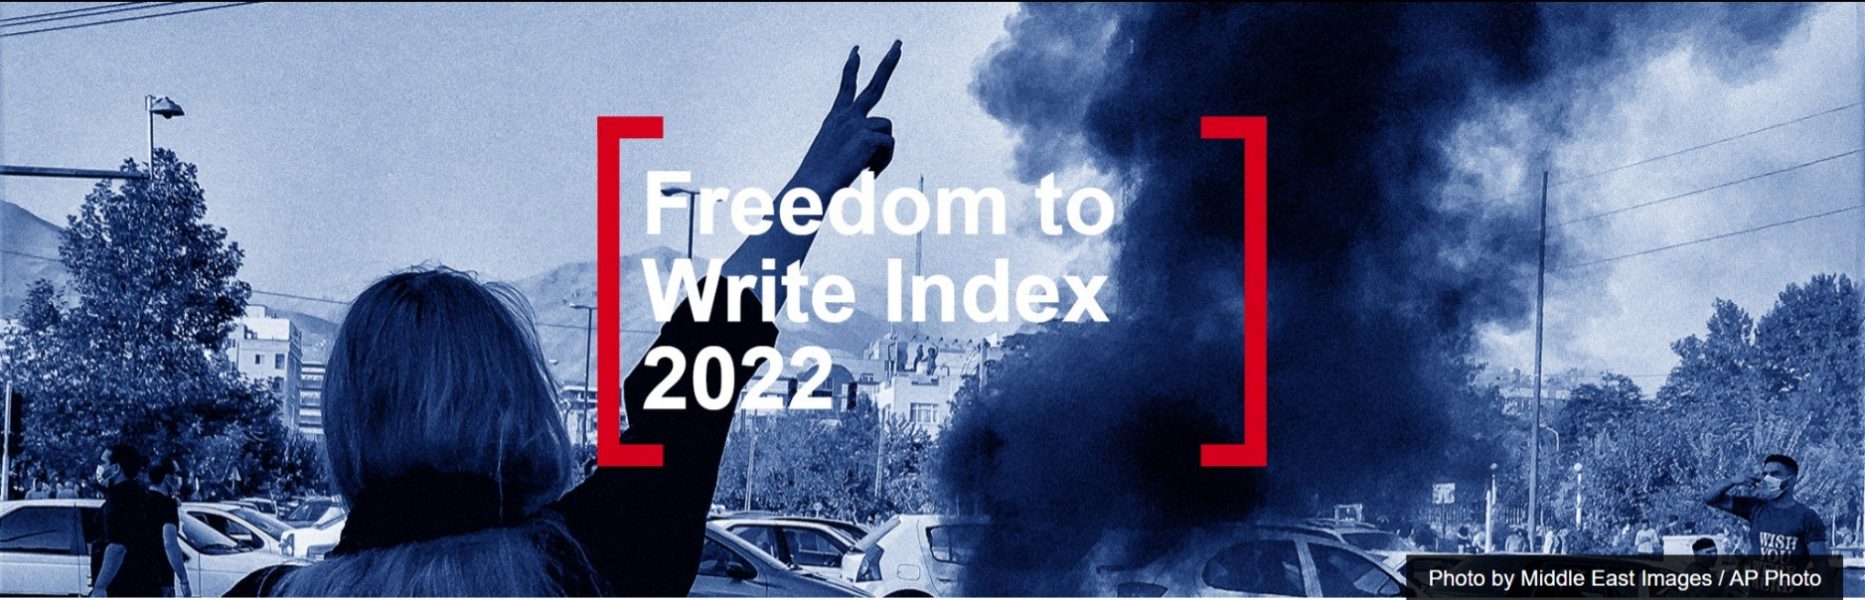 Амерыканскі ПЭН падрыхтаваў справаздачу Freedom to Write Index за 2022 год